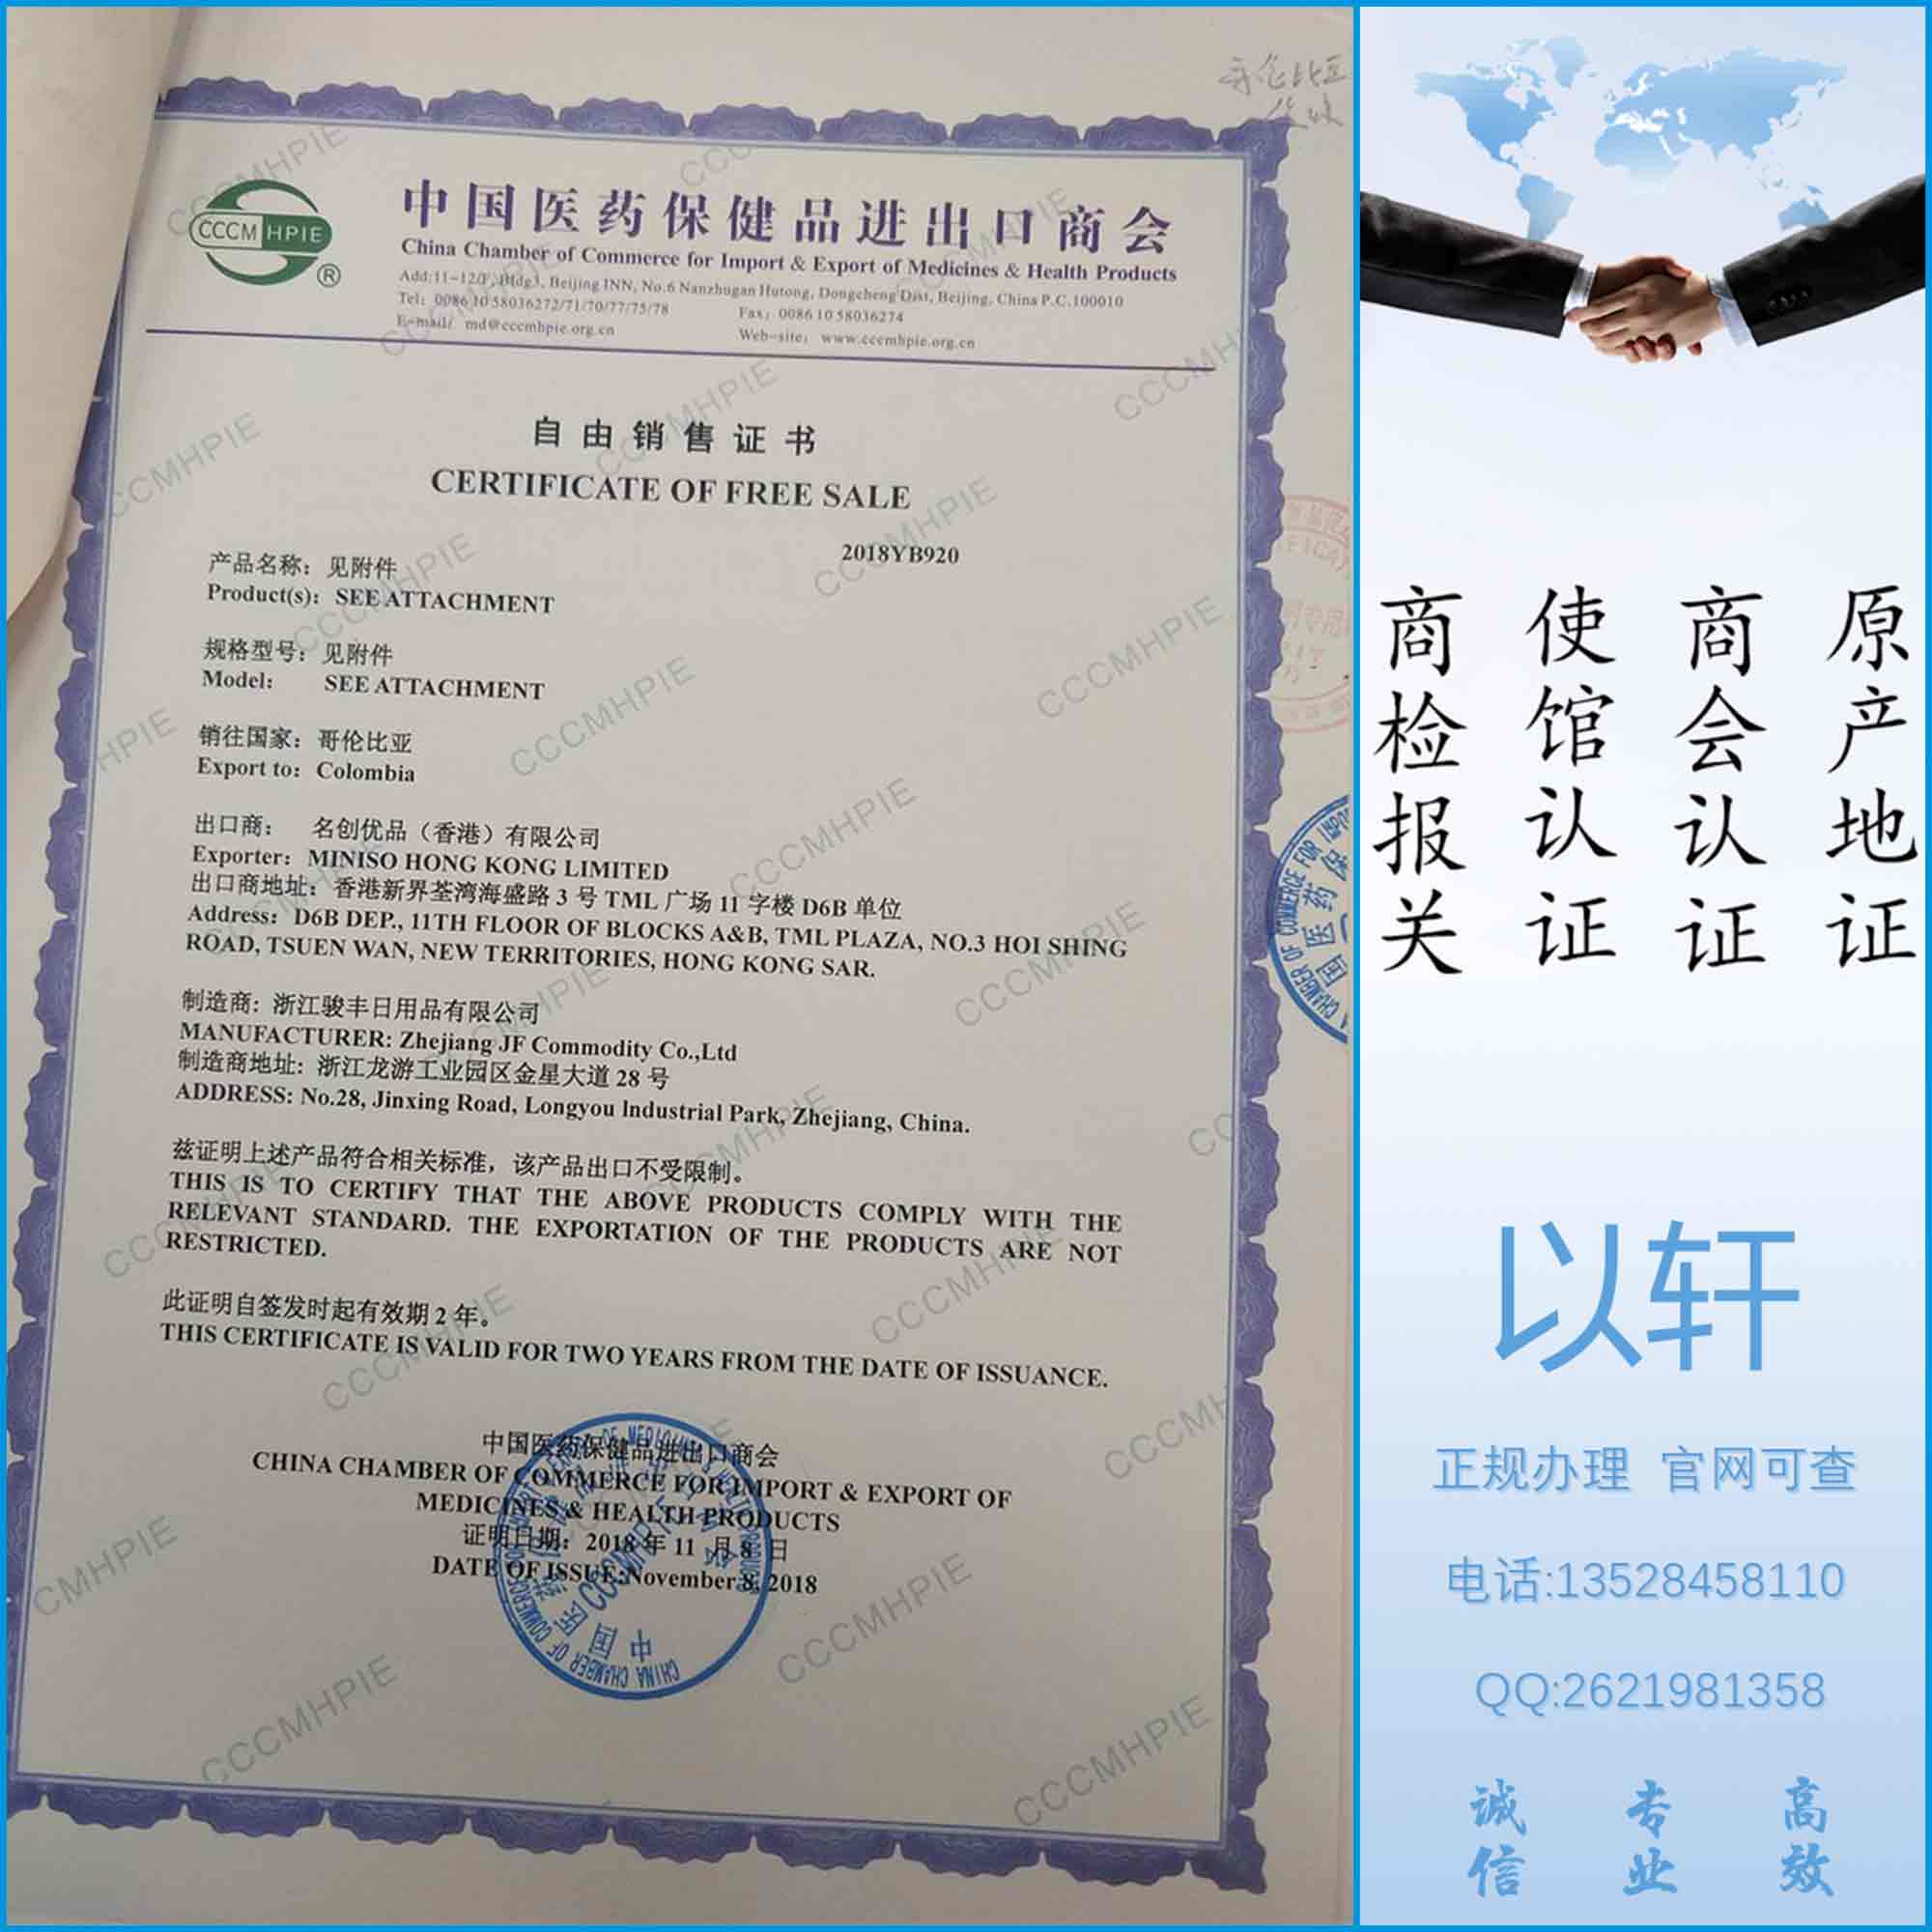 中国医药保健品商会出口自由销售证书